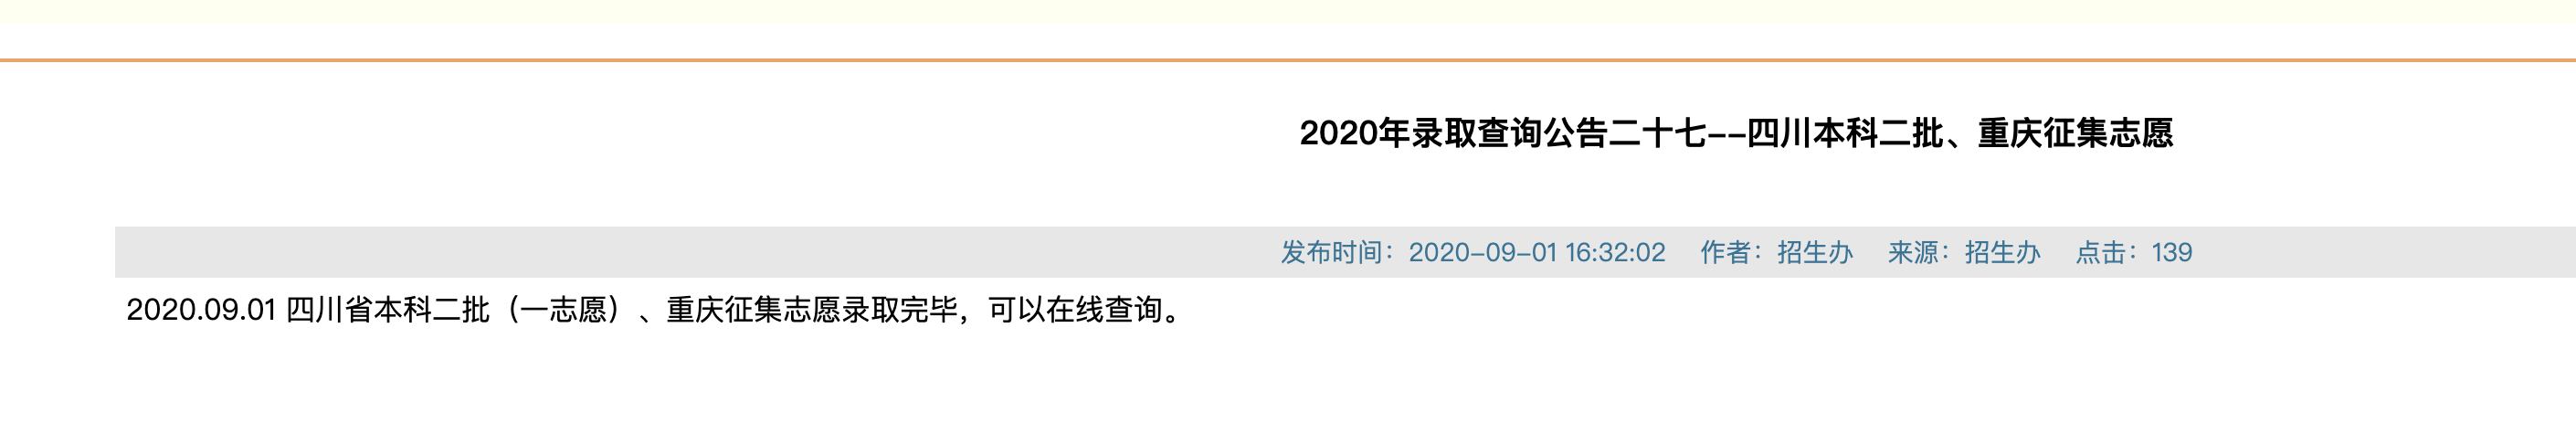 西南医科大学2020年四川本科二批、重庆征集志愿录取查询公告